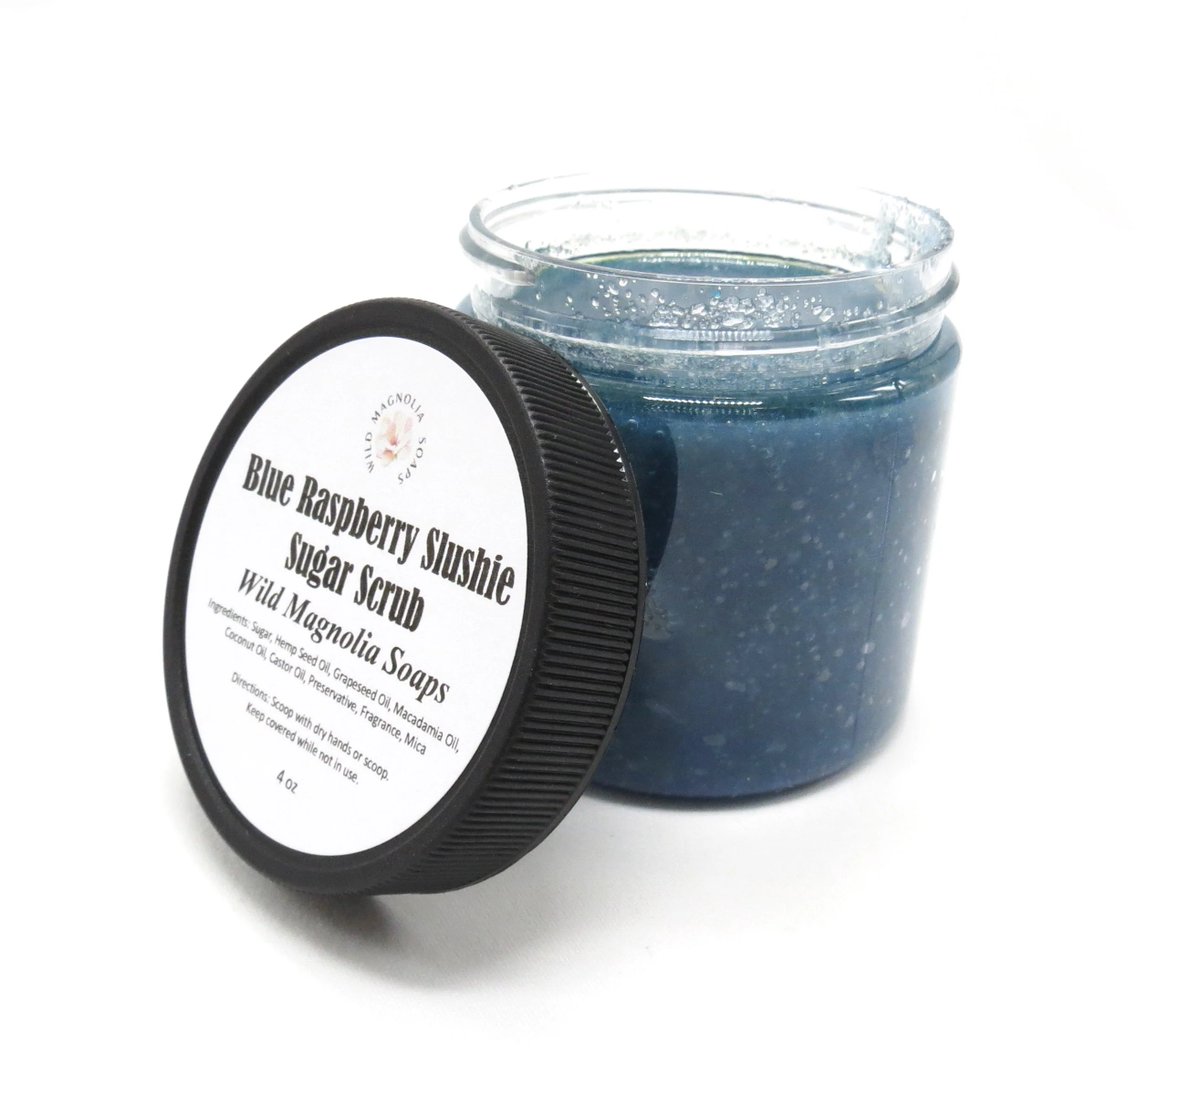 On Sale - Blue Raspberry Slushie Sugar Scrub
#facescrub #bodyscrub #exfoliating

wildmagnoliasoaps.com/products/copy-…